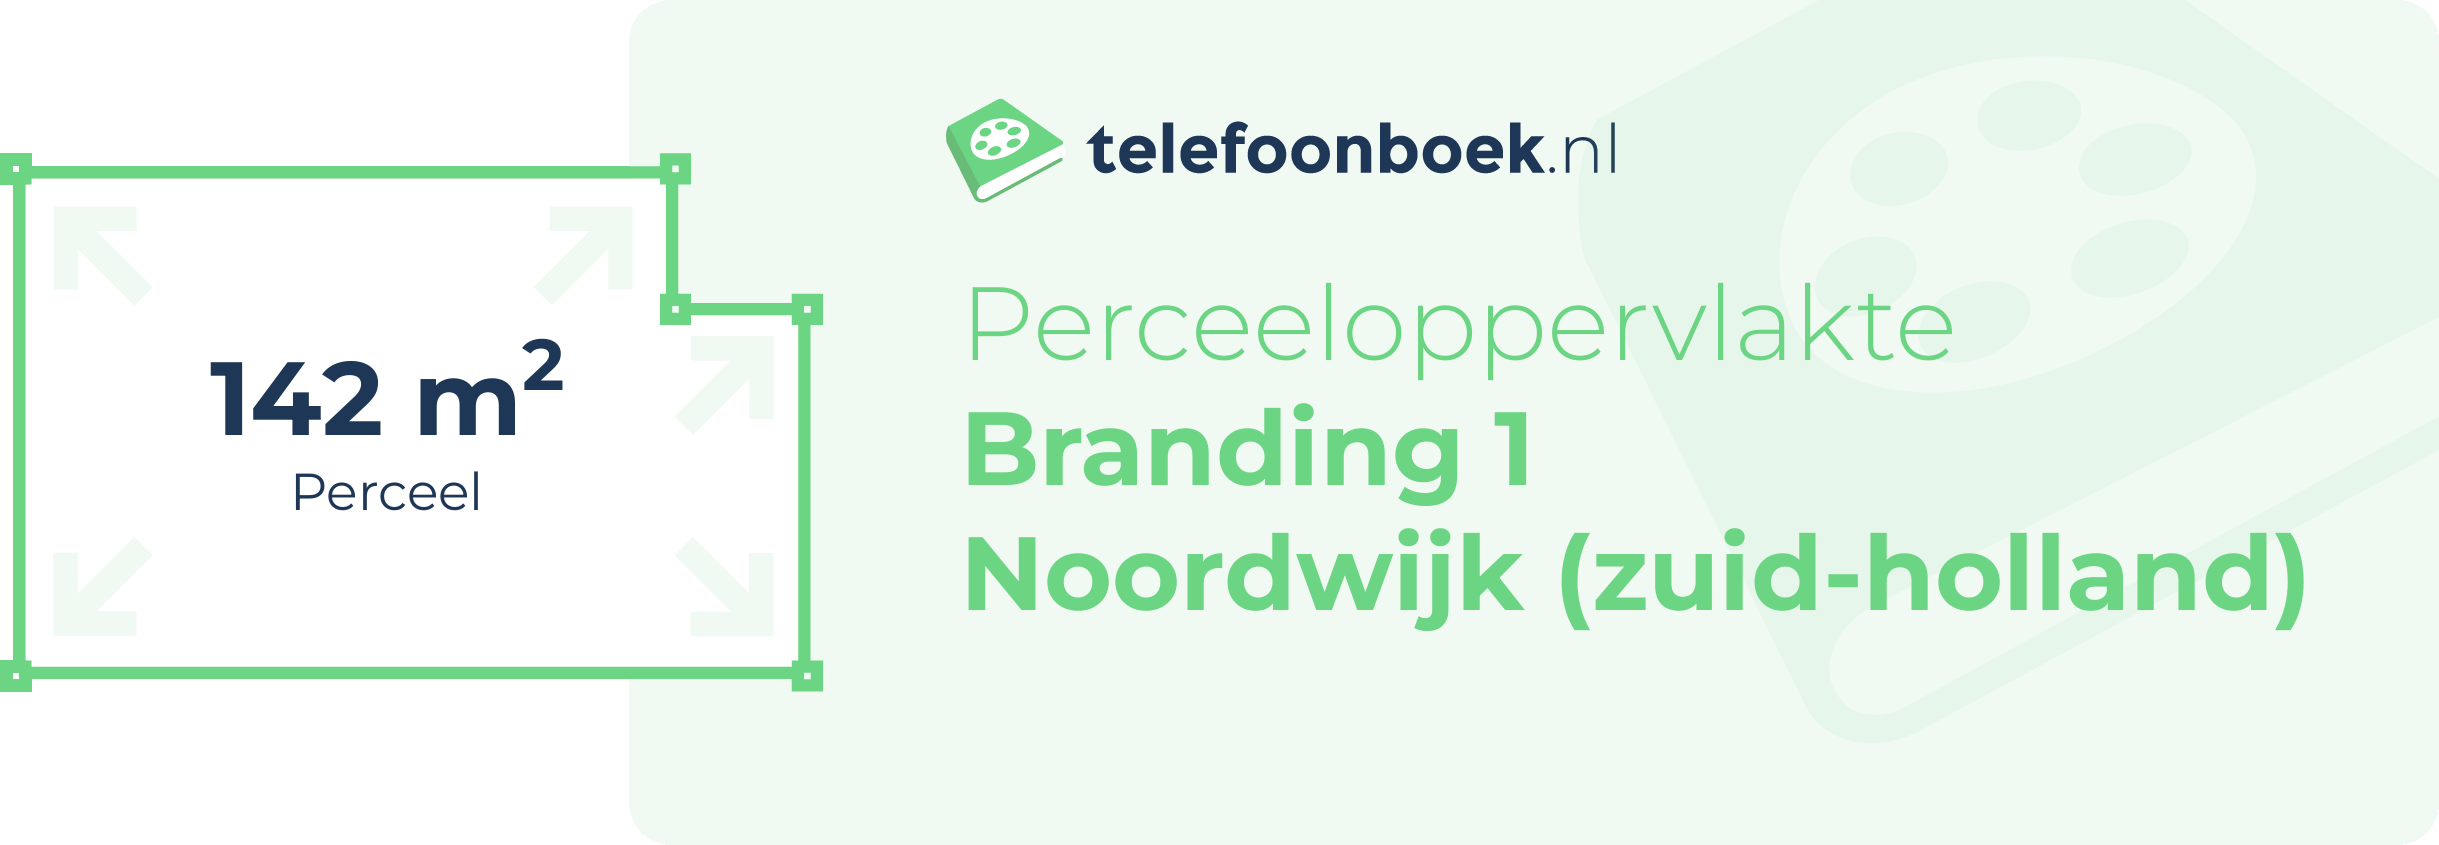 Perceeloppervlakte Branding 1 Noordwijk (Zuid-Holland)